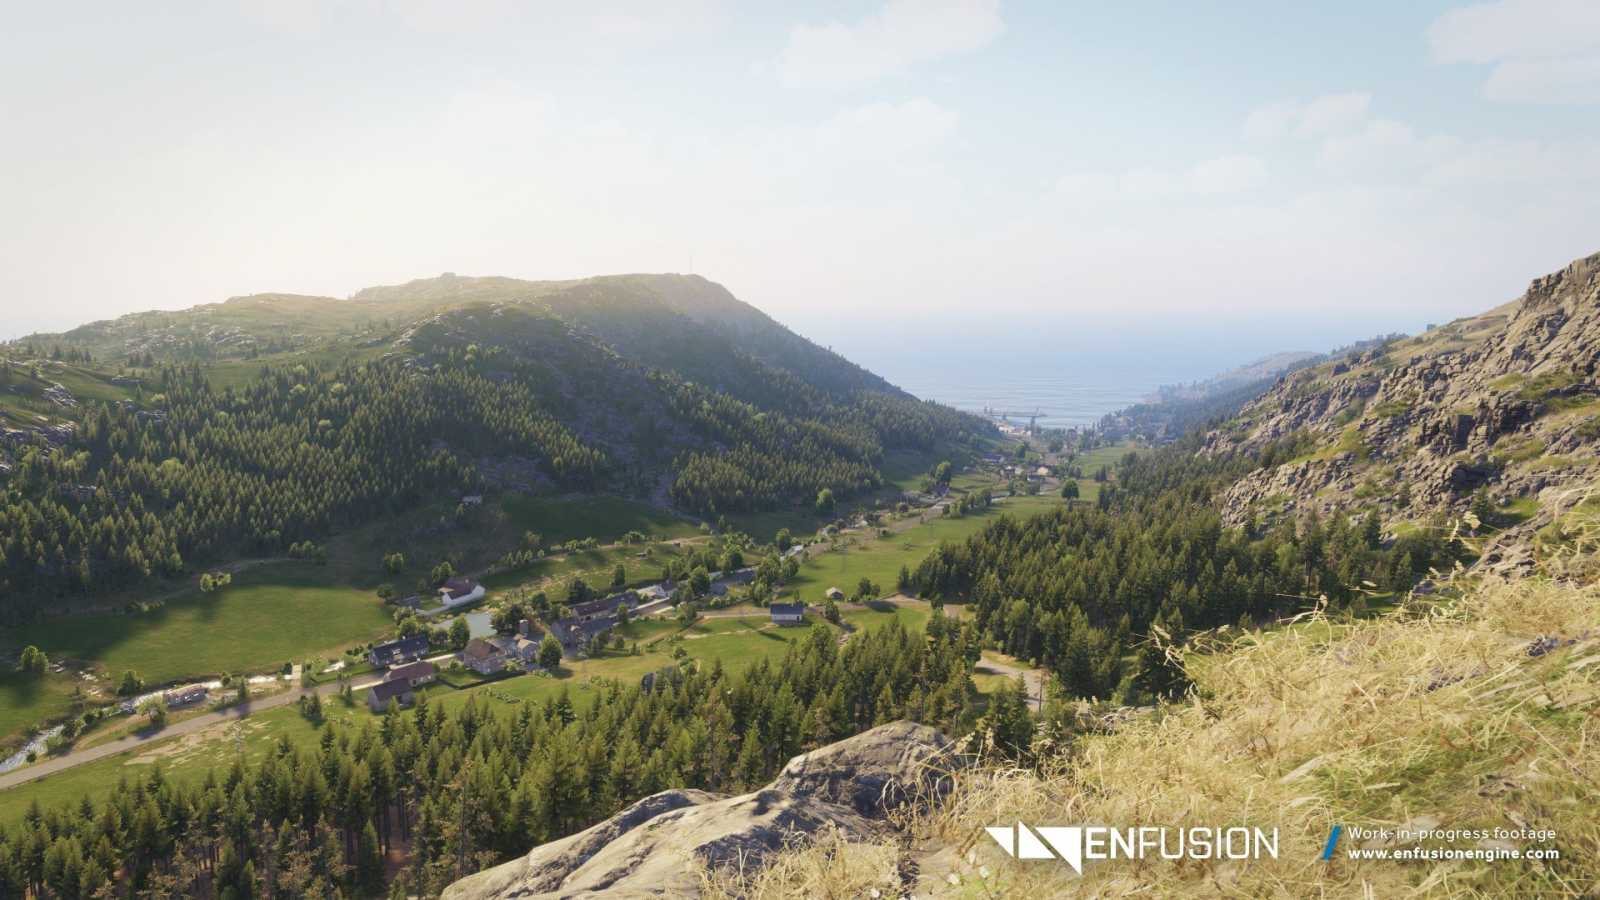 České studio Bohemia Interactive představilo zbrusu nový herní engine Enfusion